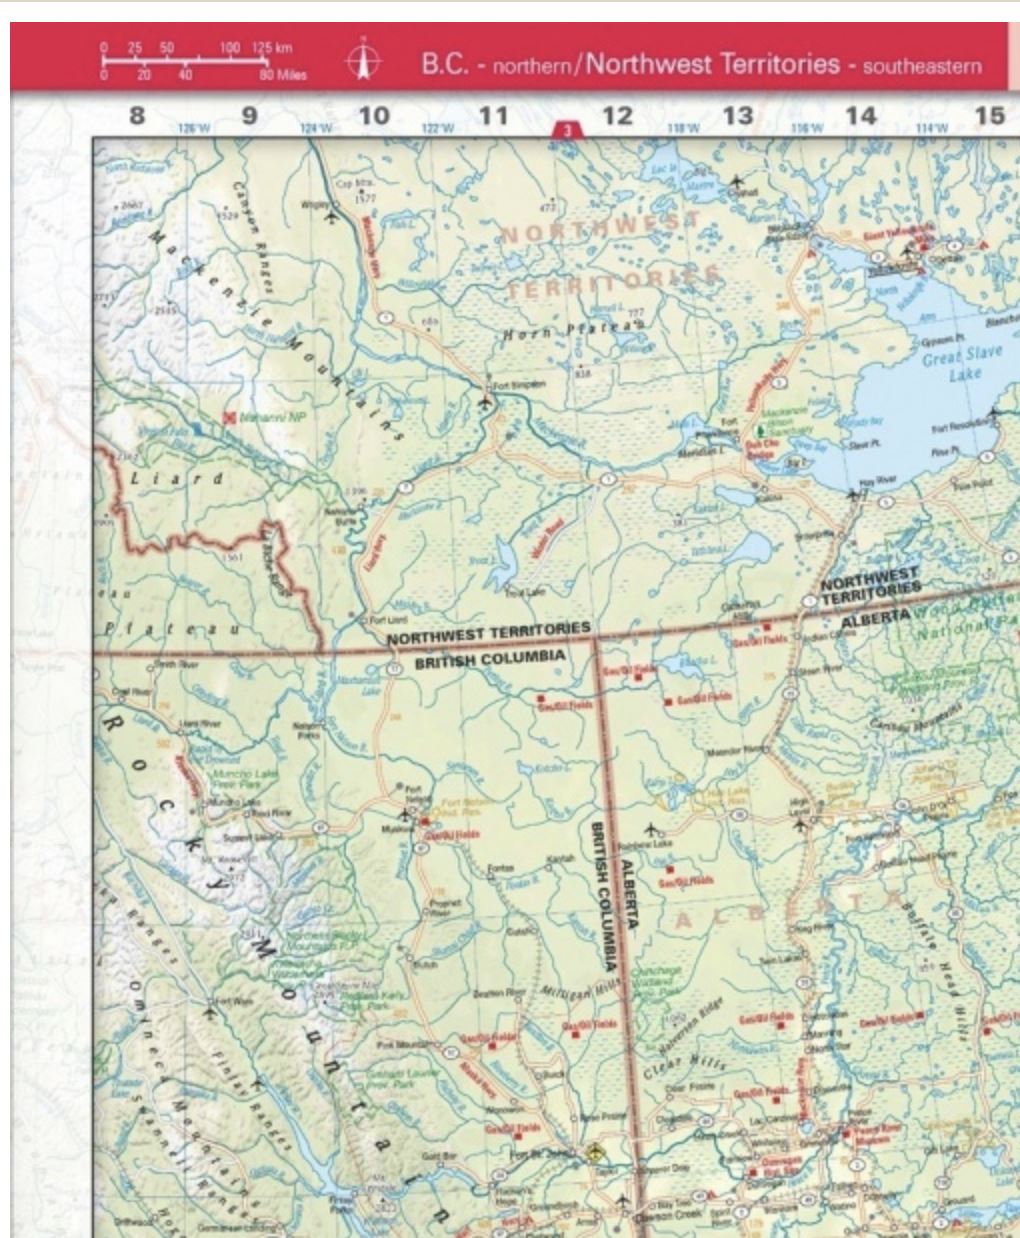 Atlas routier - Amérique du Nord (Canada, Etats Unis, Mexique) | Huber atlas Huber 